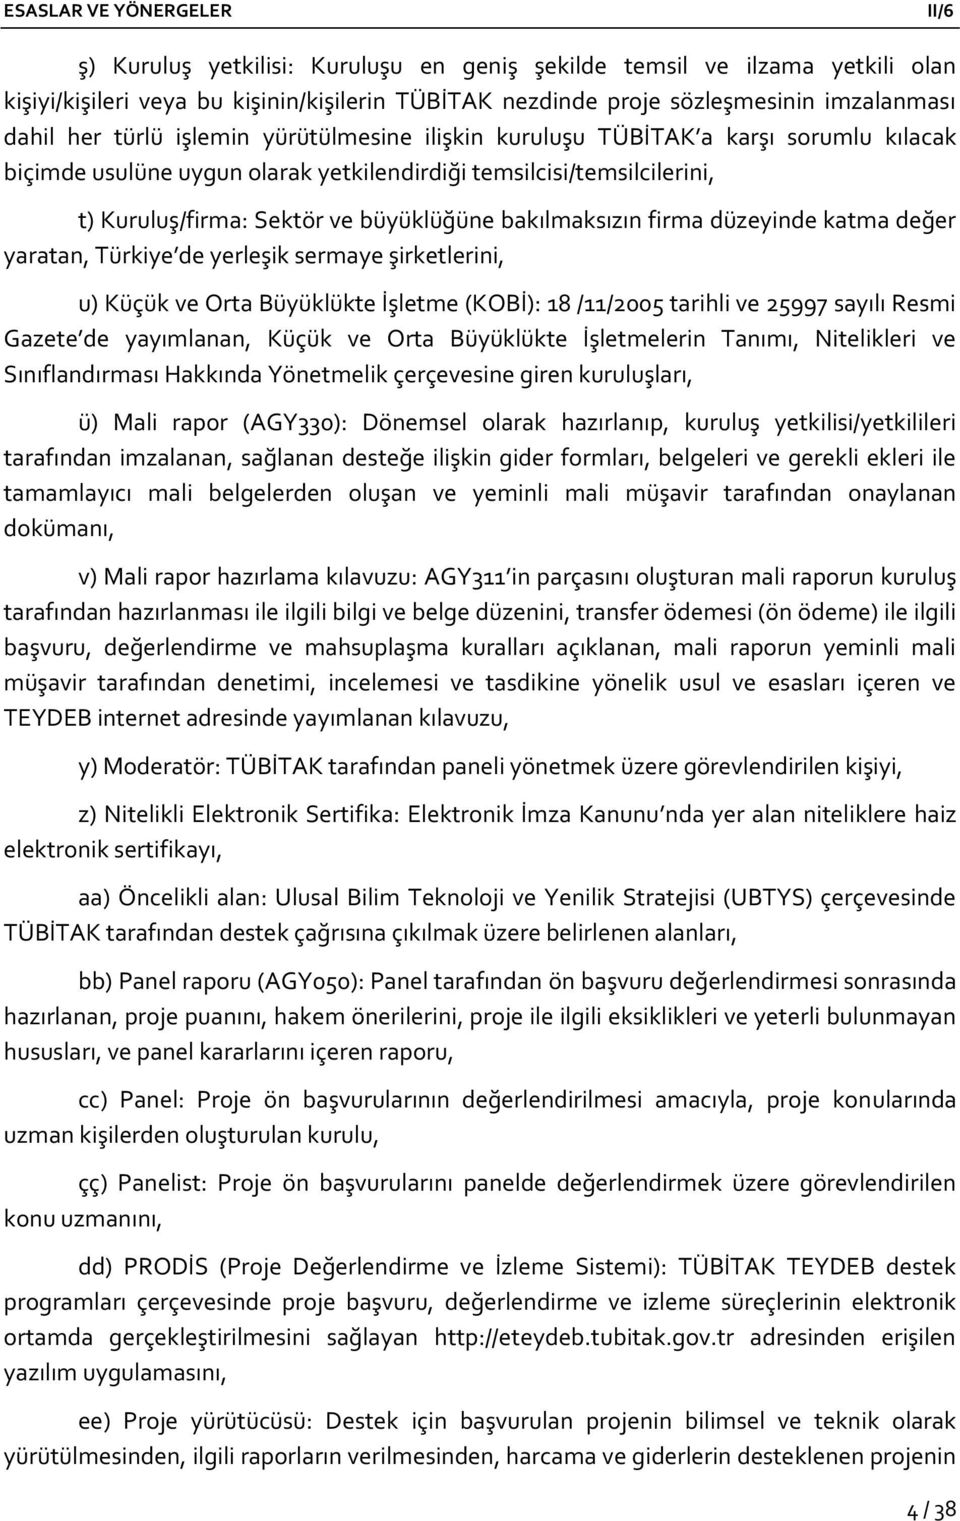 düzeyinde katma değer yaratan, Türkiye de yerleşik sermaye şirketlerini, u) Küçük ve Orta Büyüklükte İşletme (KOBİ): 18 /11/2005 tarihli ve 25997 sayılı Resmi Gazete de yayımlanan, Küçük ve Orta